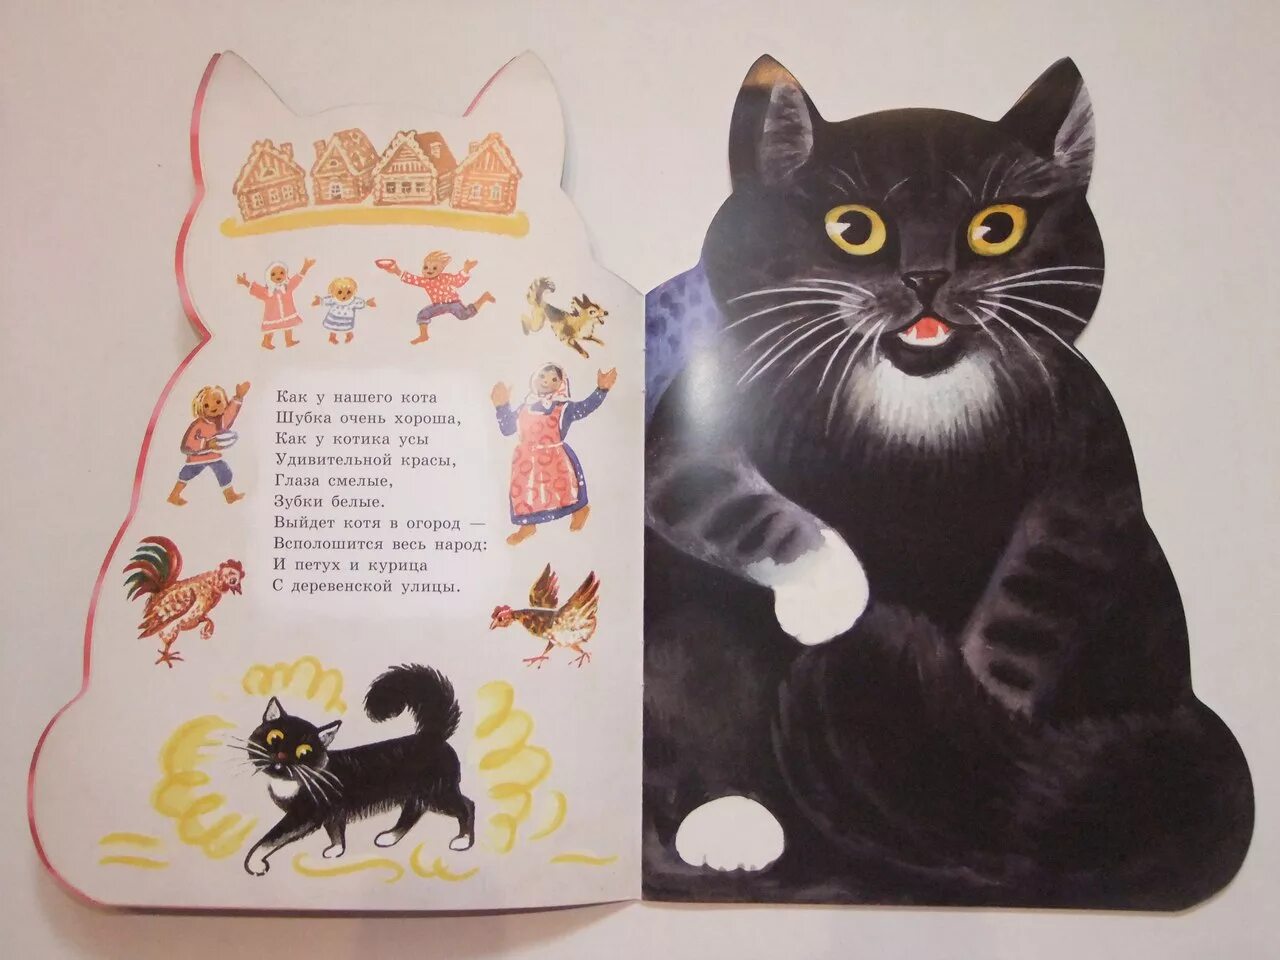 Произведения о котах. Книжки про котиков. Книги о котах и кошках для детей. Стих про кошку для детей.